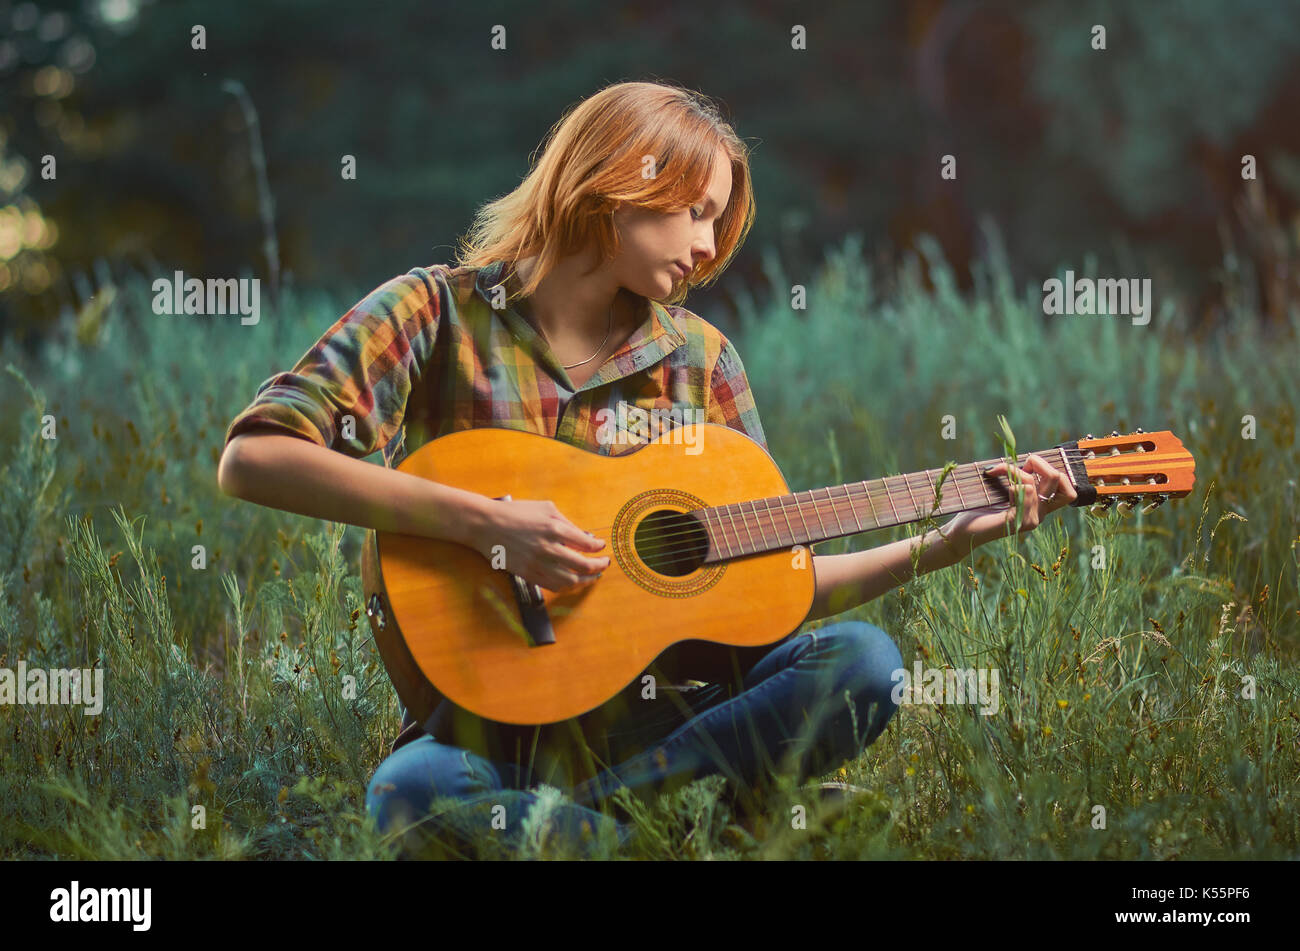 Bonito Joven Mujer Caucasica Plaid En Camiseta Y Pantalones De Mezclilla Esta Tocando En Una Guitarra Acustica En Una Pradera De Verano De Fondo Fotografia De Stock Alamy